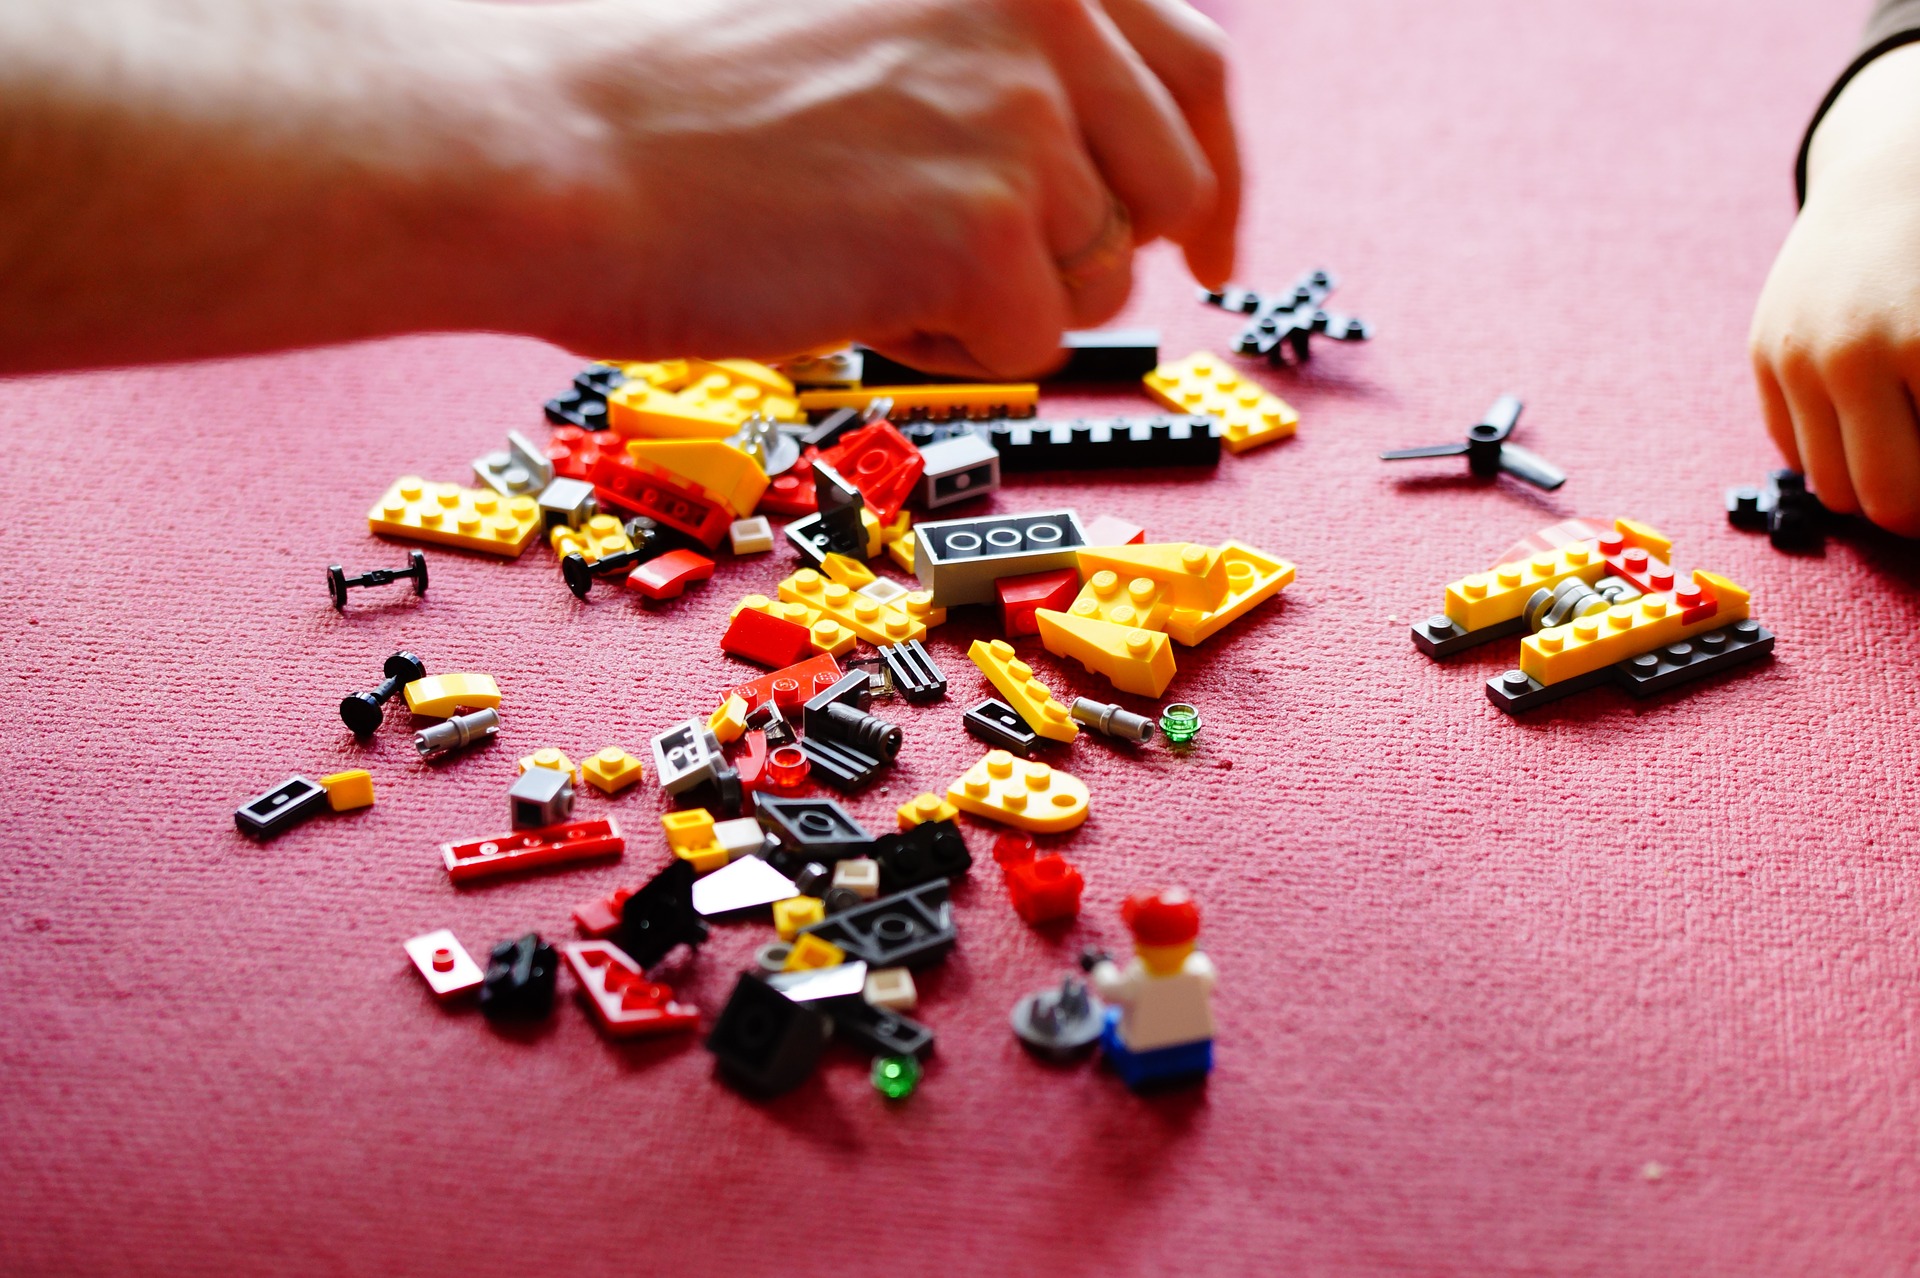 Various lego blocks spread across table